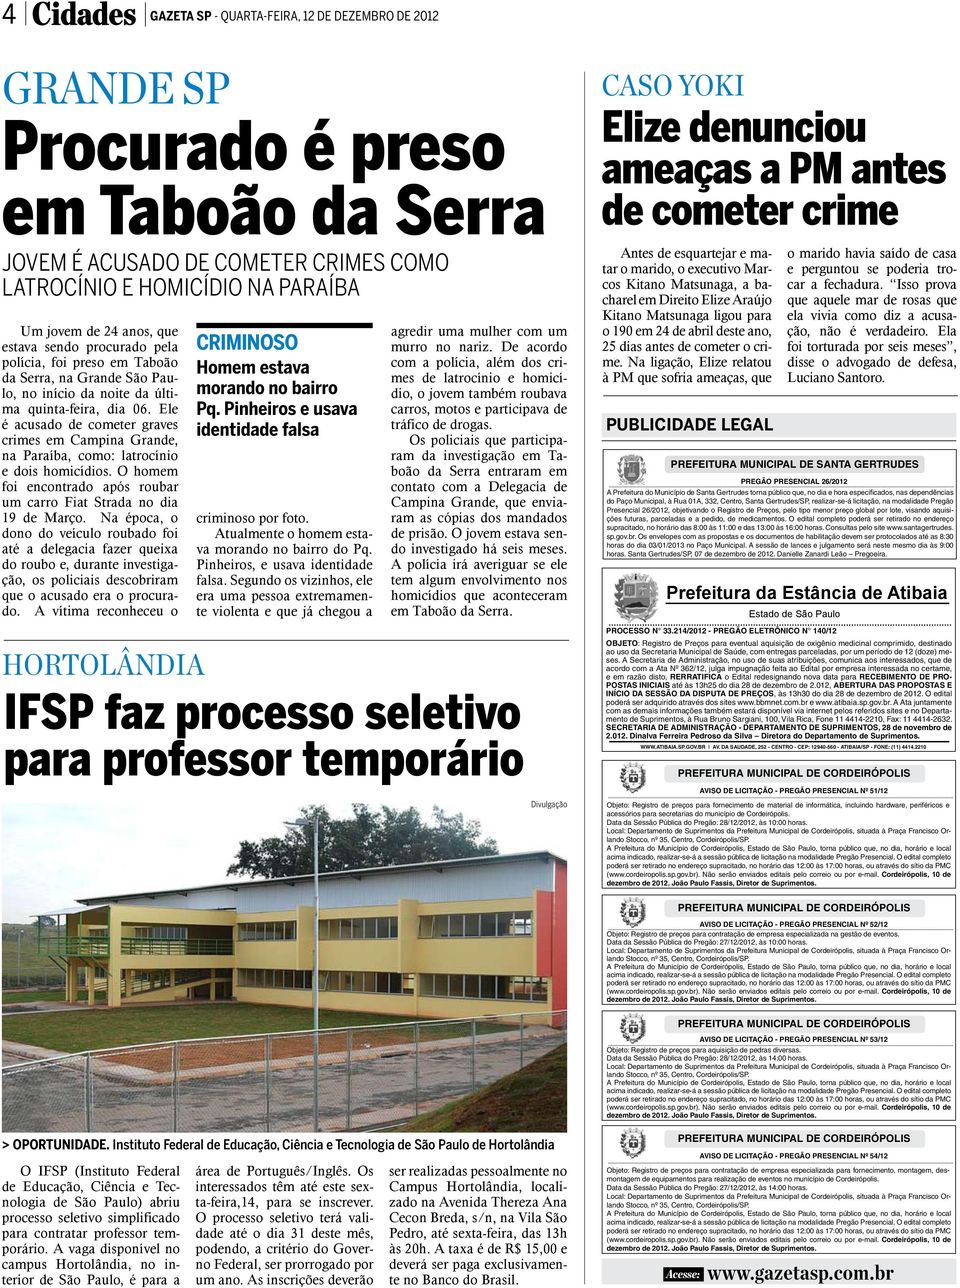 Ele é acusado de cometer graves crimes em Campina Grande, na Paraíba, como: latrocínio e dois homicídios. O homem foi encontrado após roubar um carro Fiat Strada no dia 19 de Março.